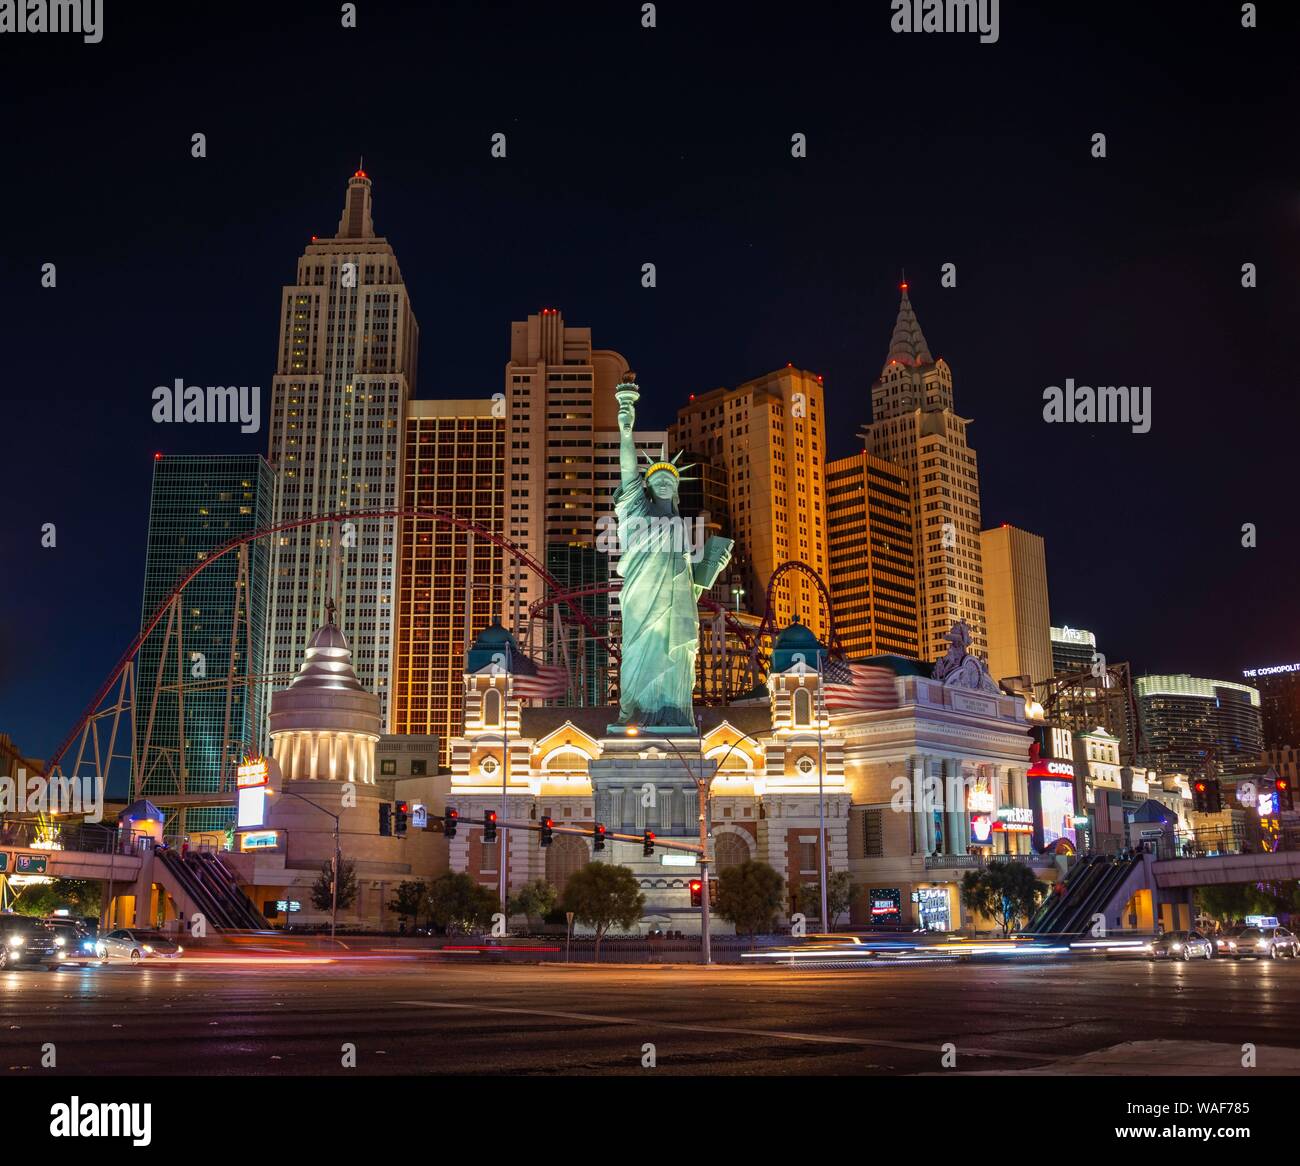 New York New York Hotel and Casino, Las Vegas Strip, Las Vegas, Nevada, USA Stockfoto